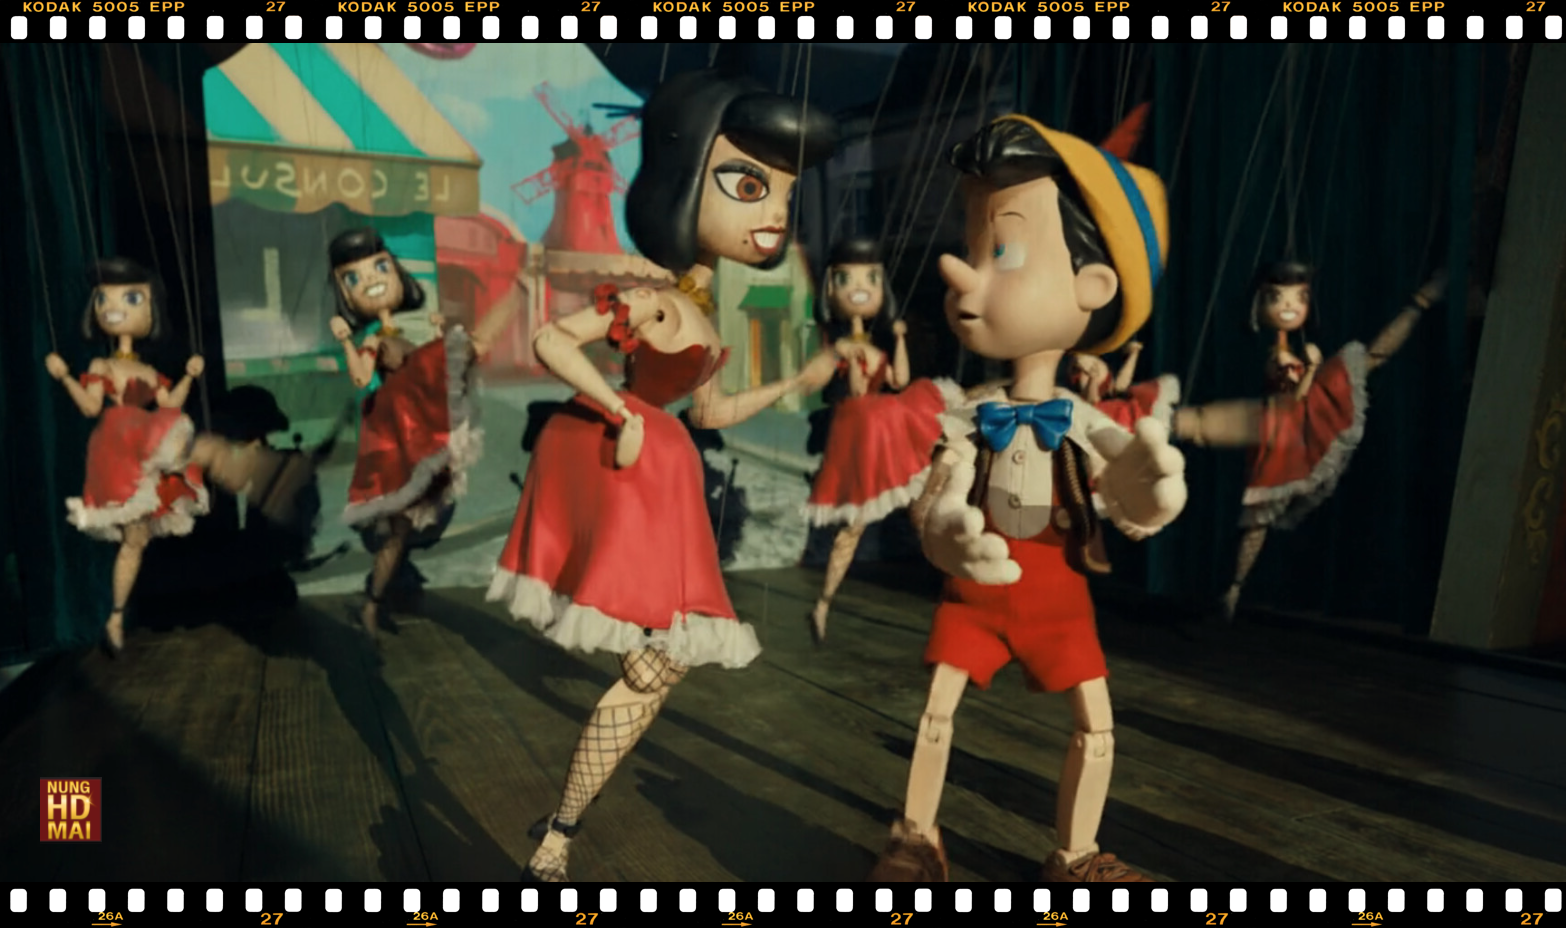 รีวิวหนัง Pinocchio หุ่นไม้ที่มีชีวิตจริง น่าดู